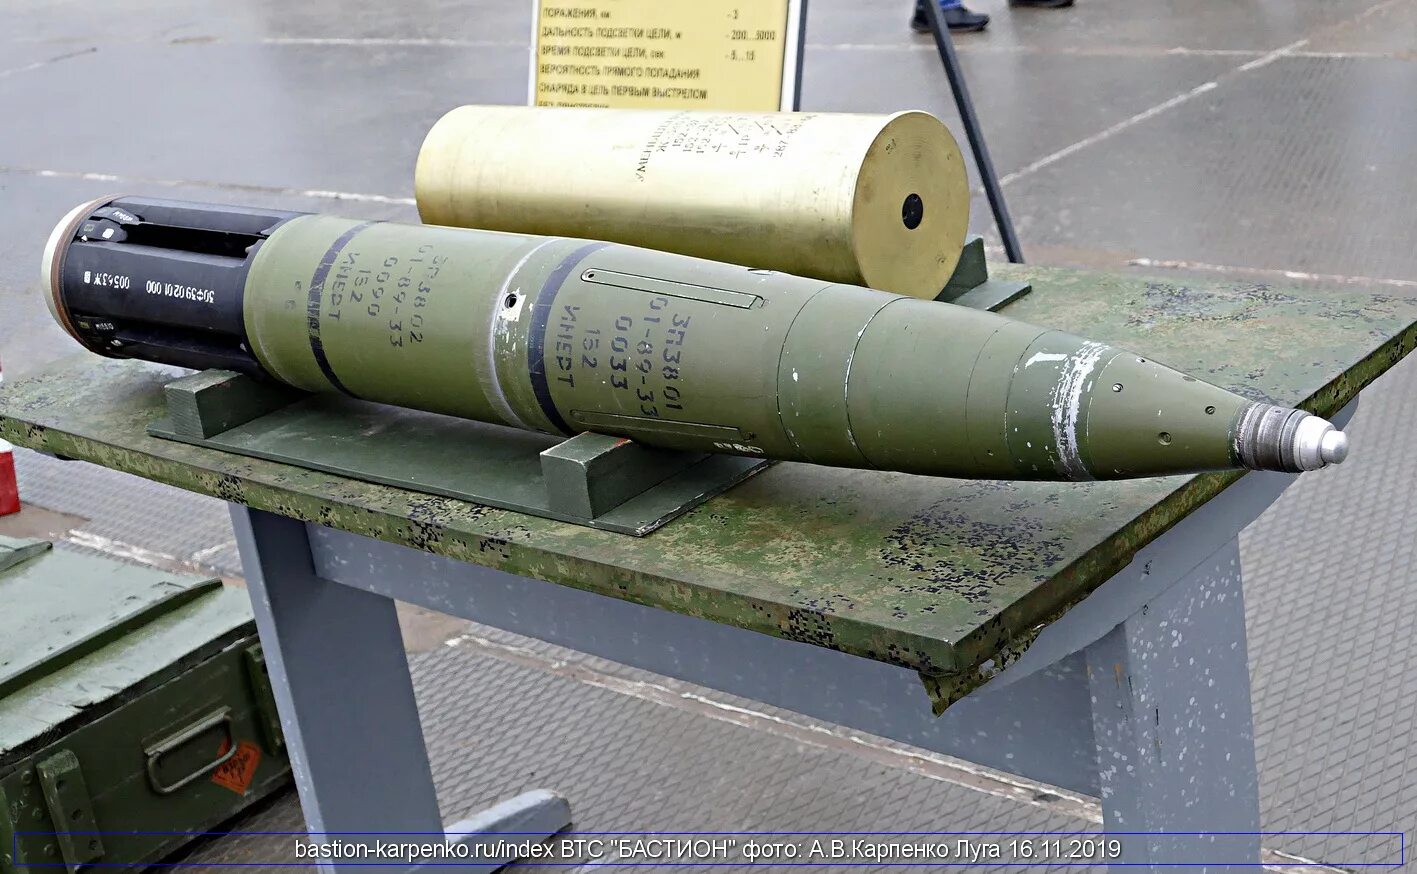 152 Мм снаряд Краснополь. 152-Мм управляемые снаряды «Краснополь». 152 Калибр снаряд 2к25. Снаряды "Краснополь" калибра 152.